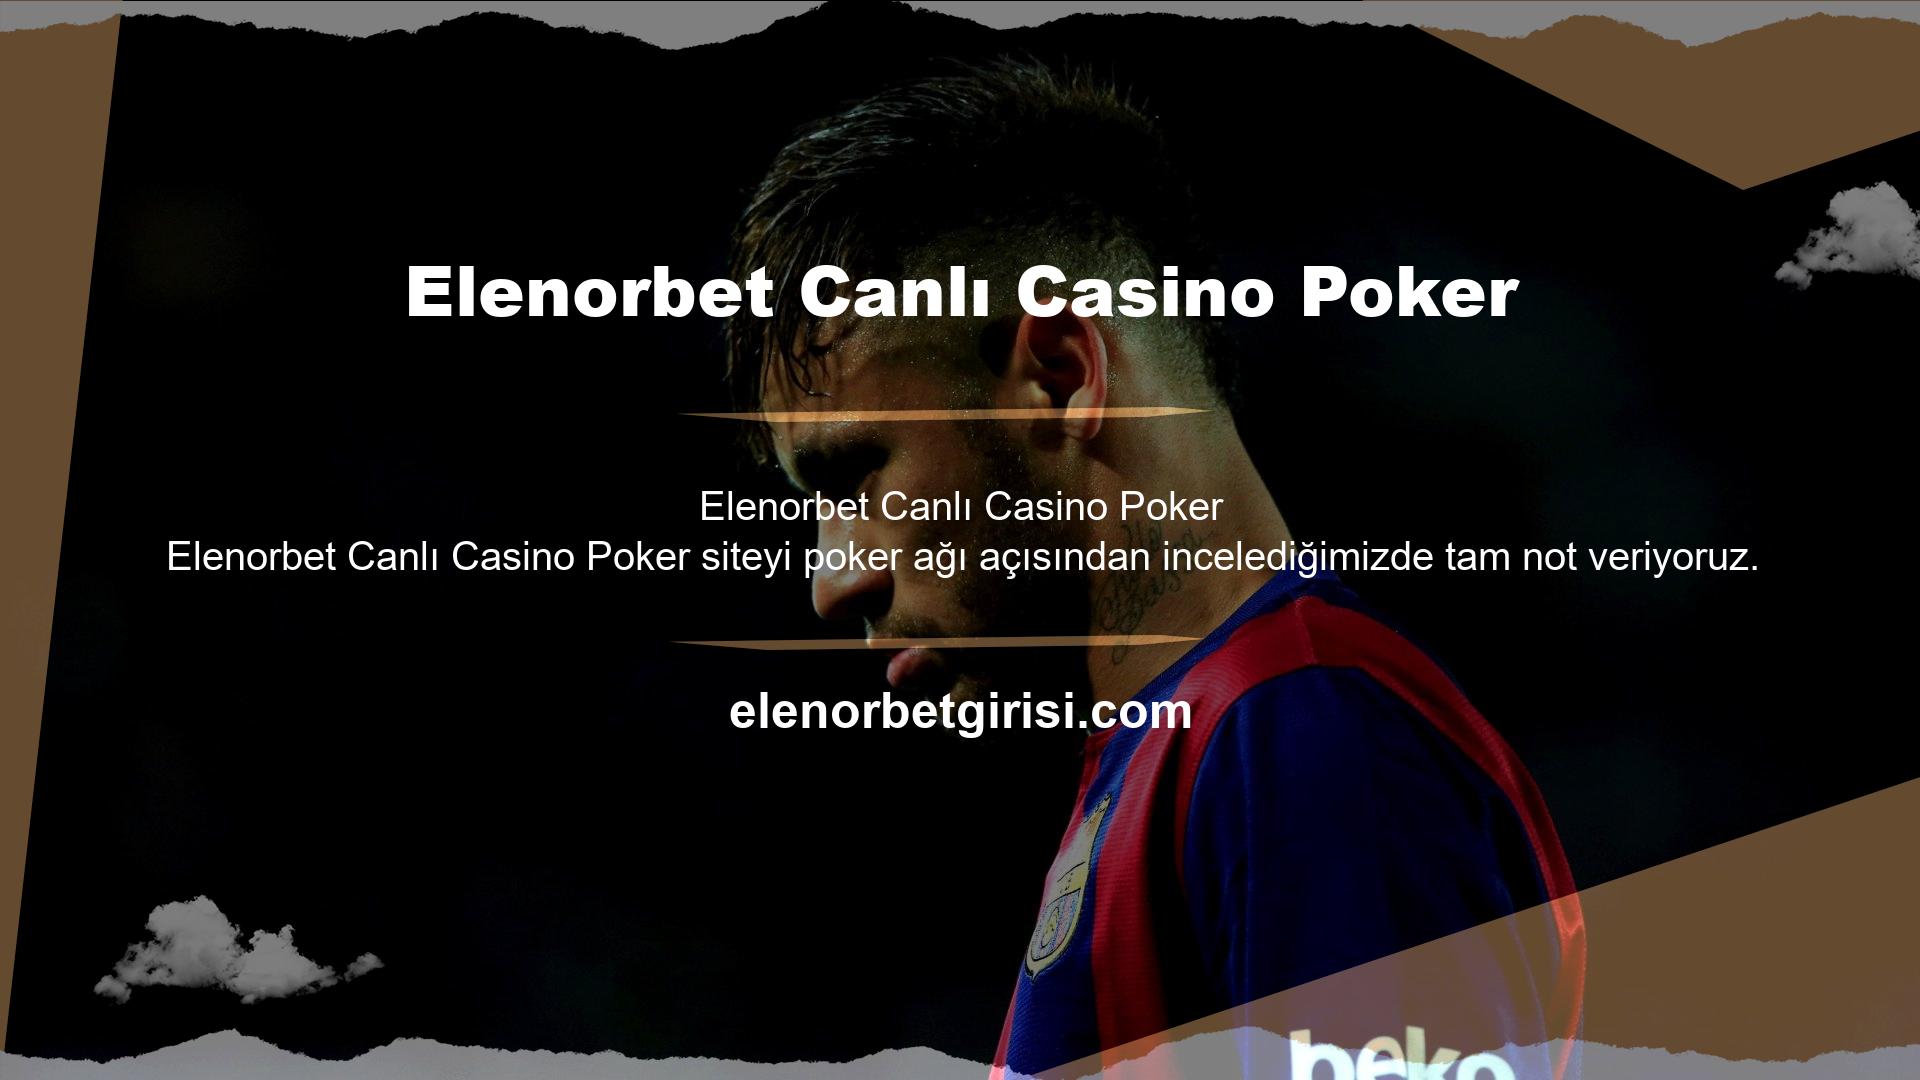 Elenorbet Canlı Casino poker oyunları, Ultimate Texas Hold'em, Texas Hold'em ve Three Card Poker gibi seçenekleri içerir